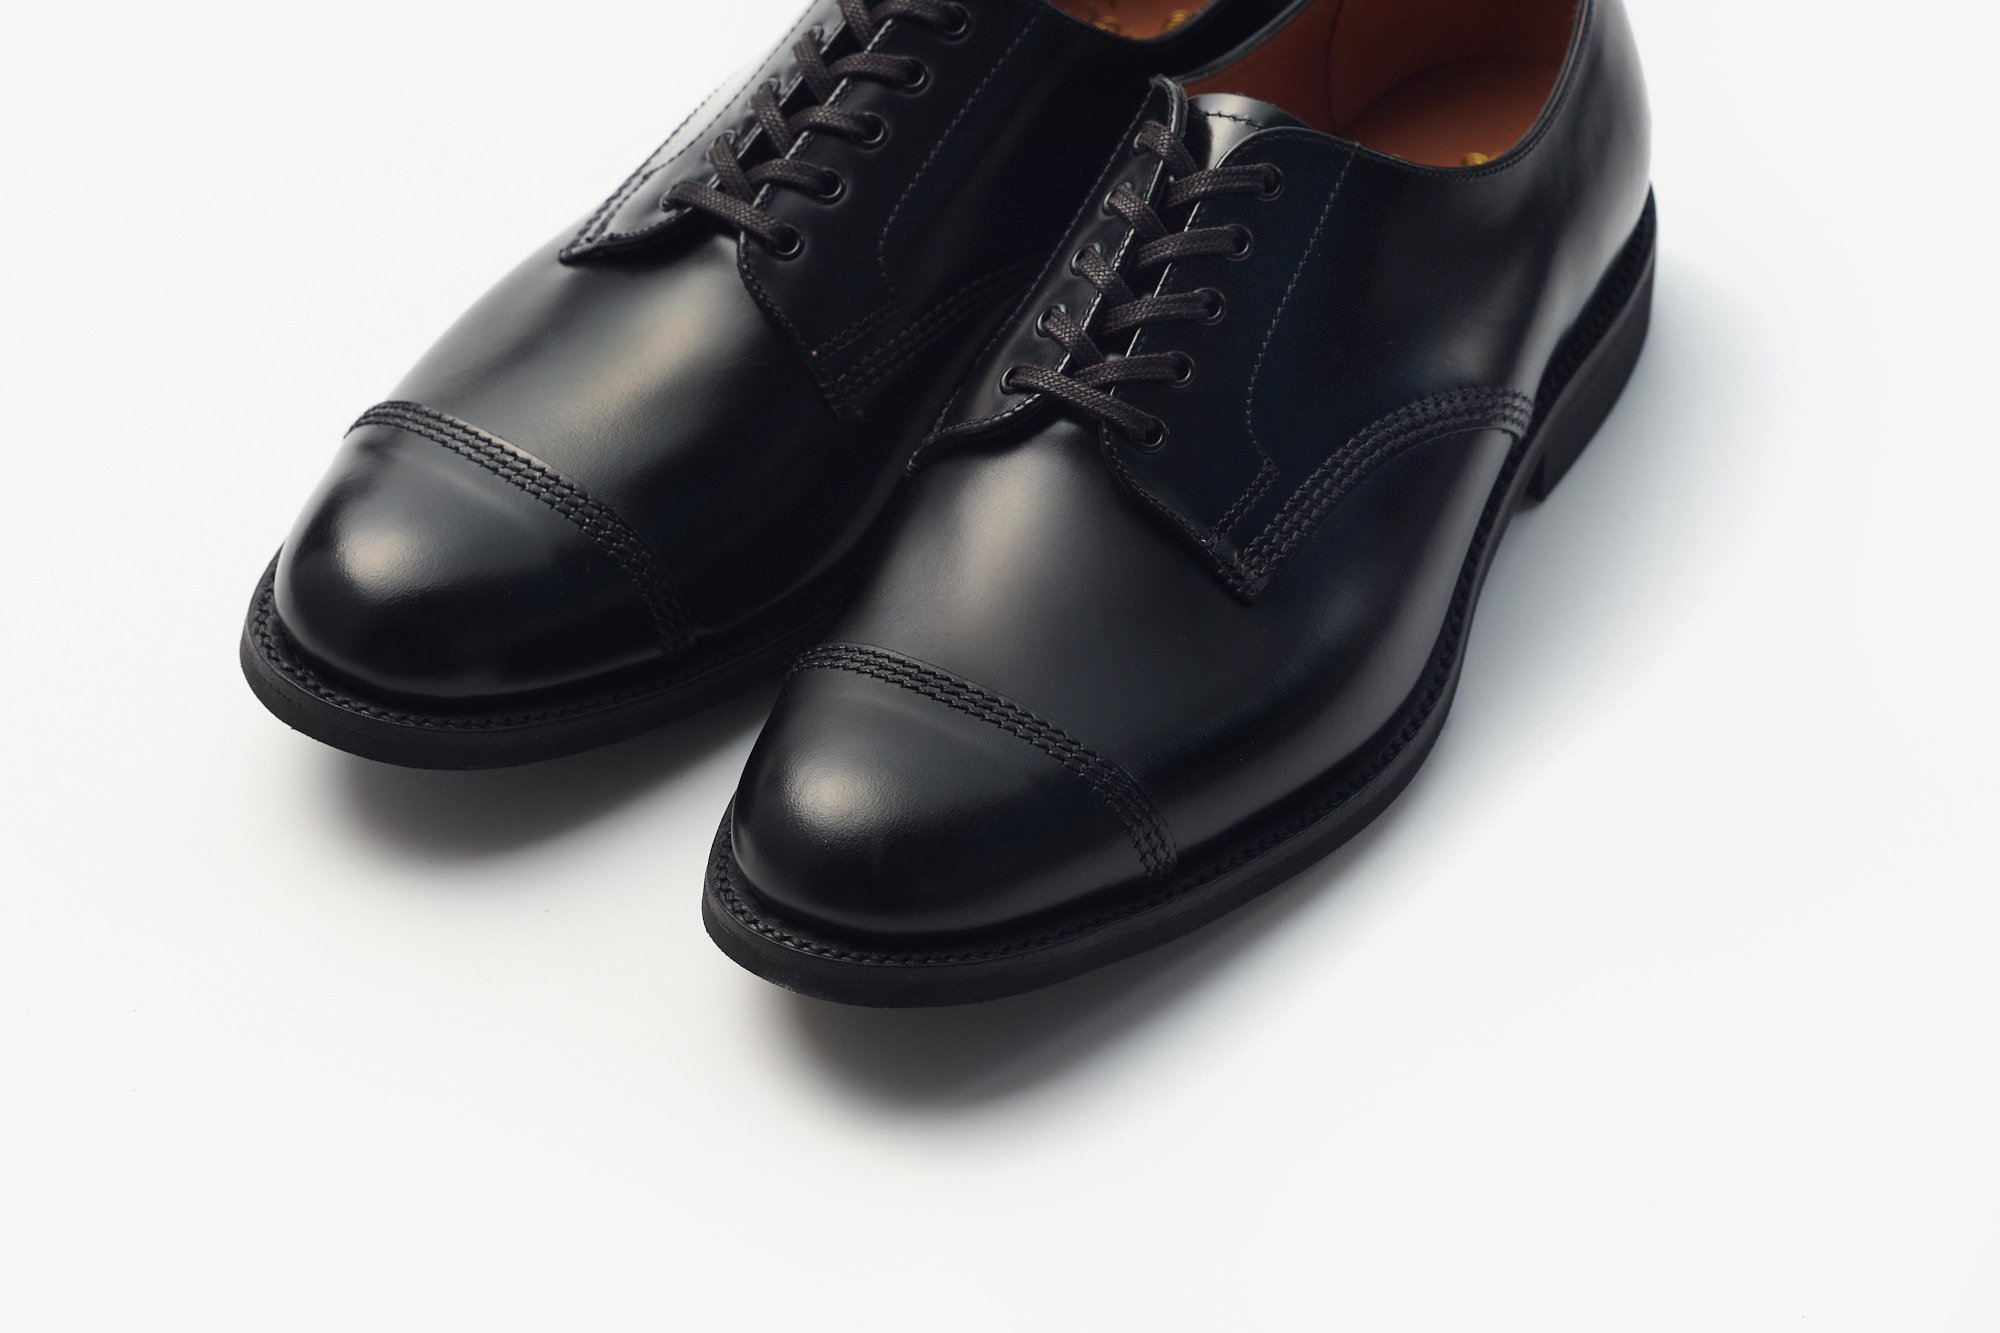 【新品未使用】 SANDERS サンダース 革靴 ドレスシューズ レザーシューズ MILITARY DERBY SHOE ビジネス 1128 【UK6.5(25.5cm)/BLACK】